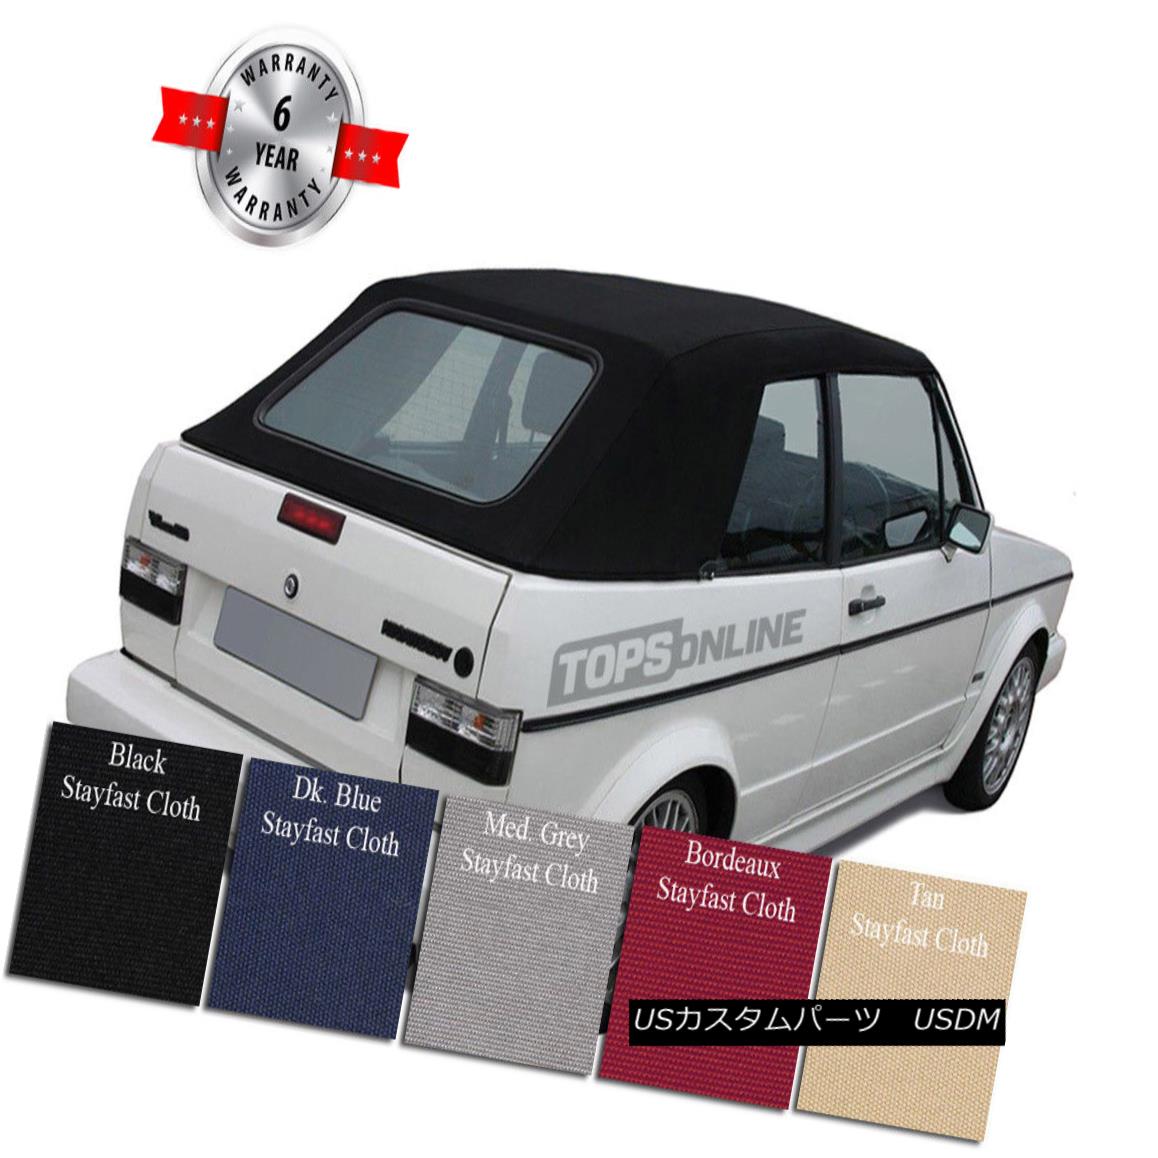 VW RABBIT CABRIOLET 80-94 CONVERTIBLE TOP TAN CLOTH